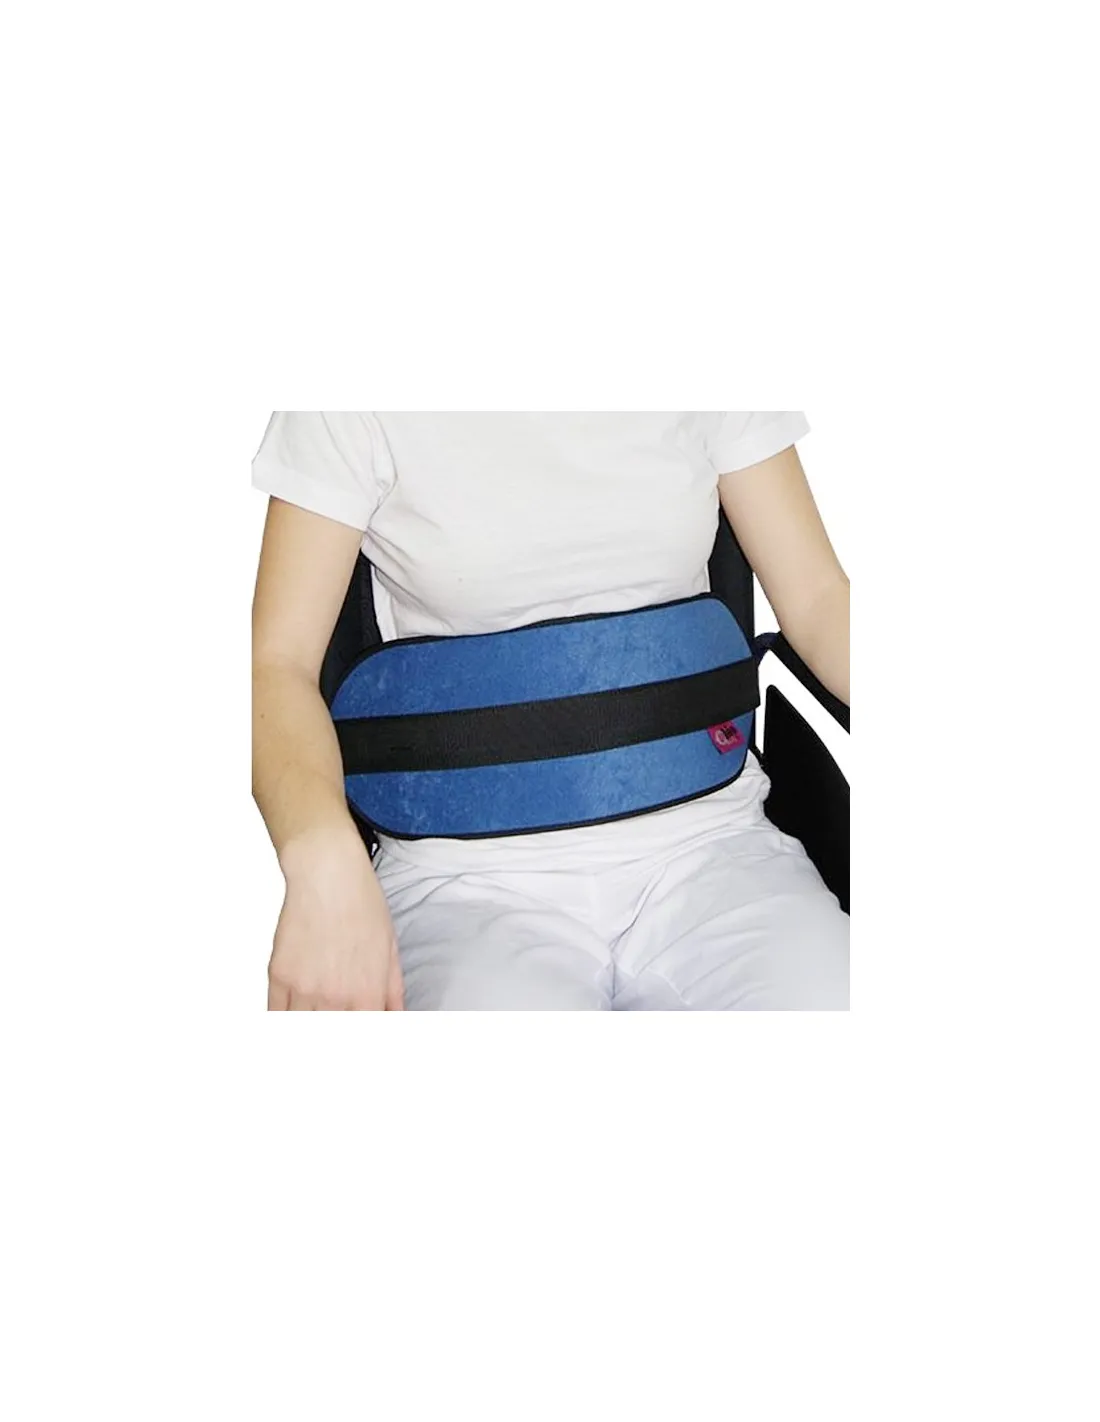 Cinturón de Sujeción Abdominal para Sillas de Ruedas o Sillón (Acolchado o  Transpirable) · Oferta desde 12,95 €